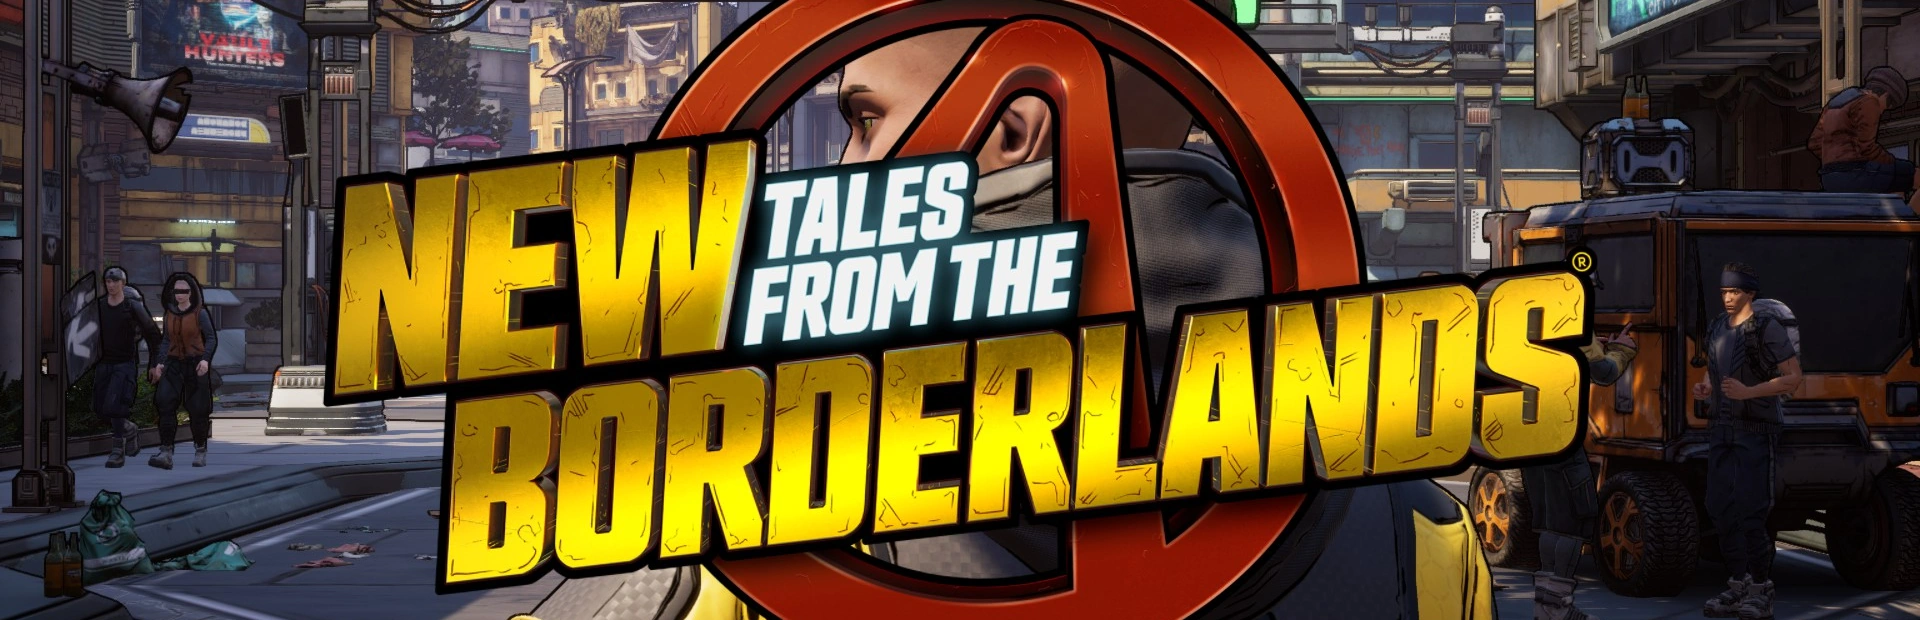 دانلود بازی Tales from the borderlands  برای PC | گیمباتو